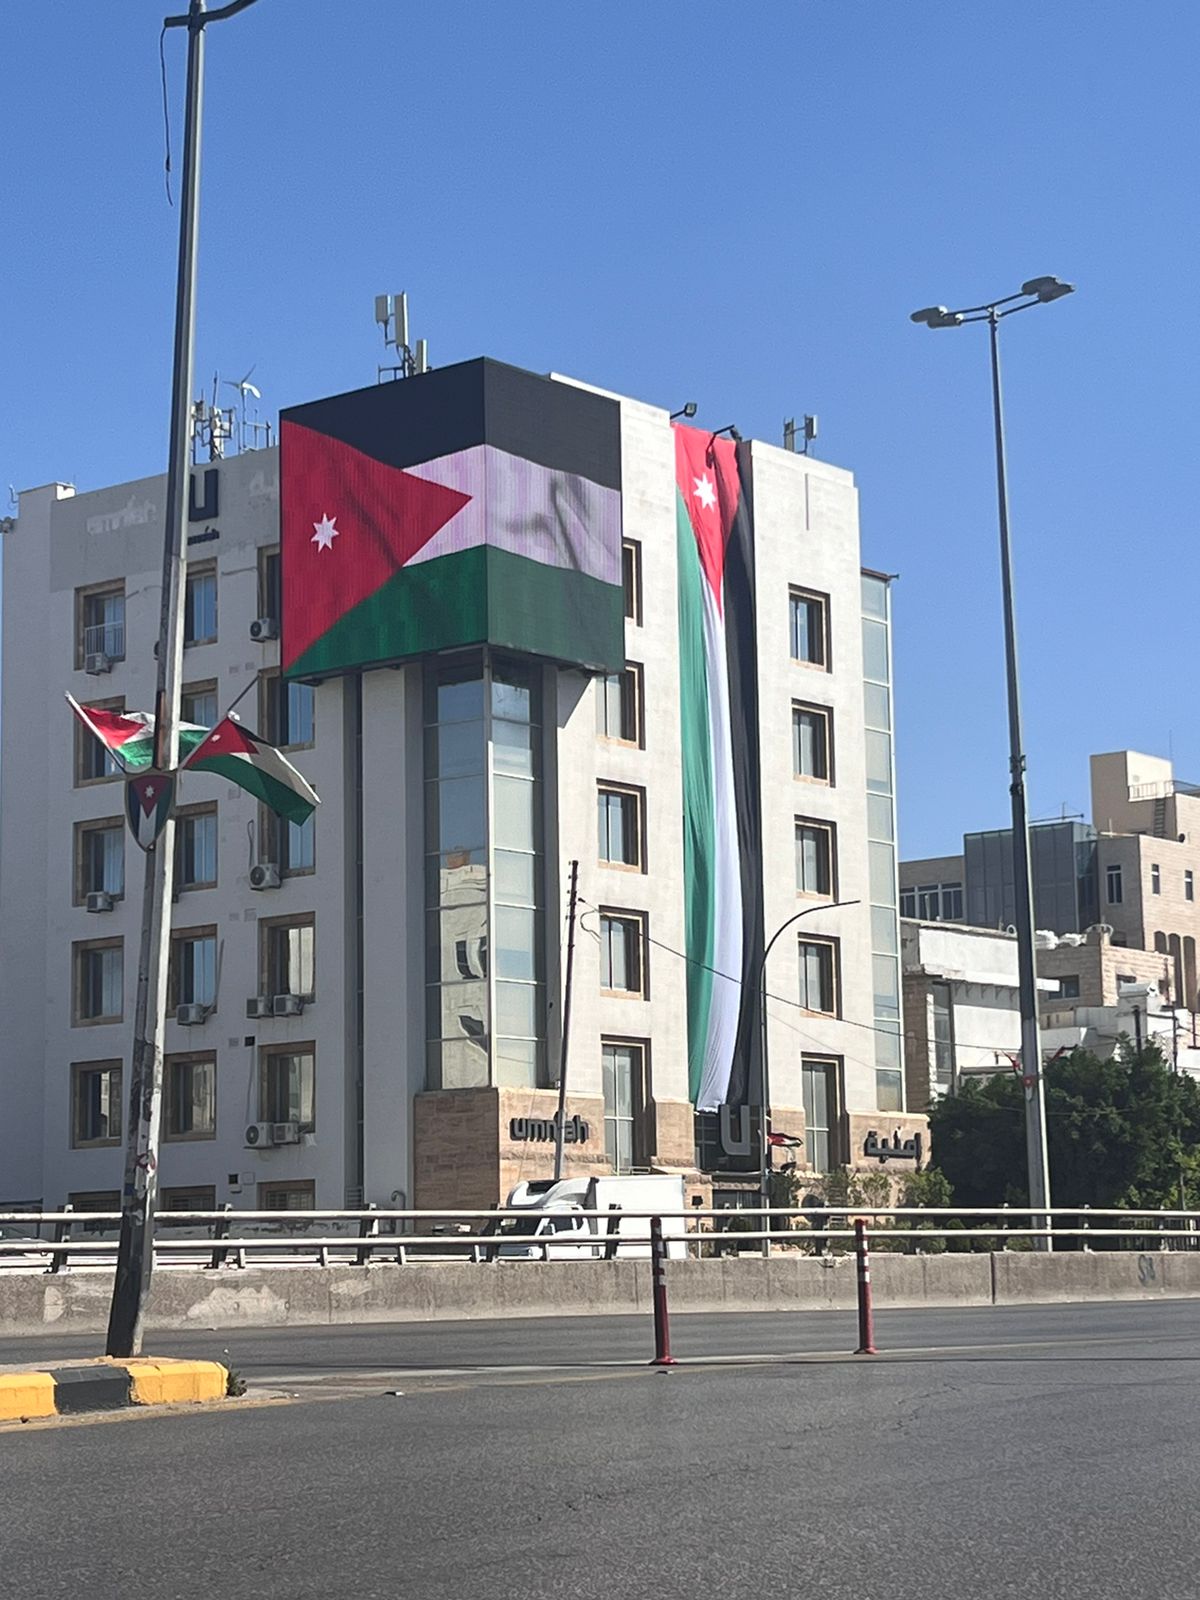 أمنية تحتفل بعيد الاستقلال بتزيين مقرها الرئيسي بالأعلام الأردنية